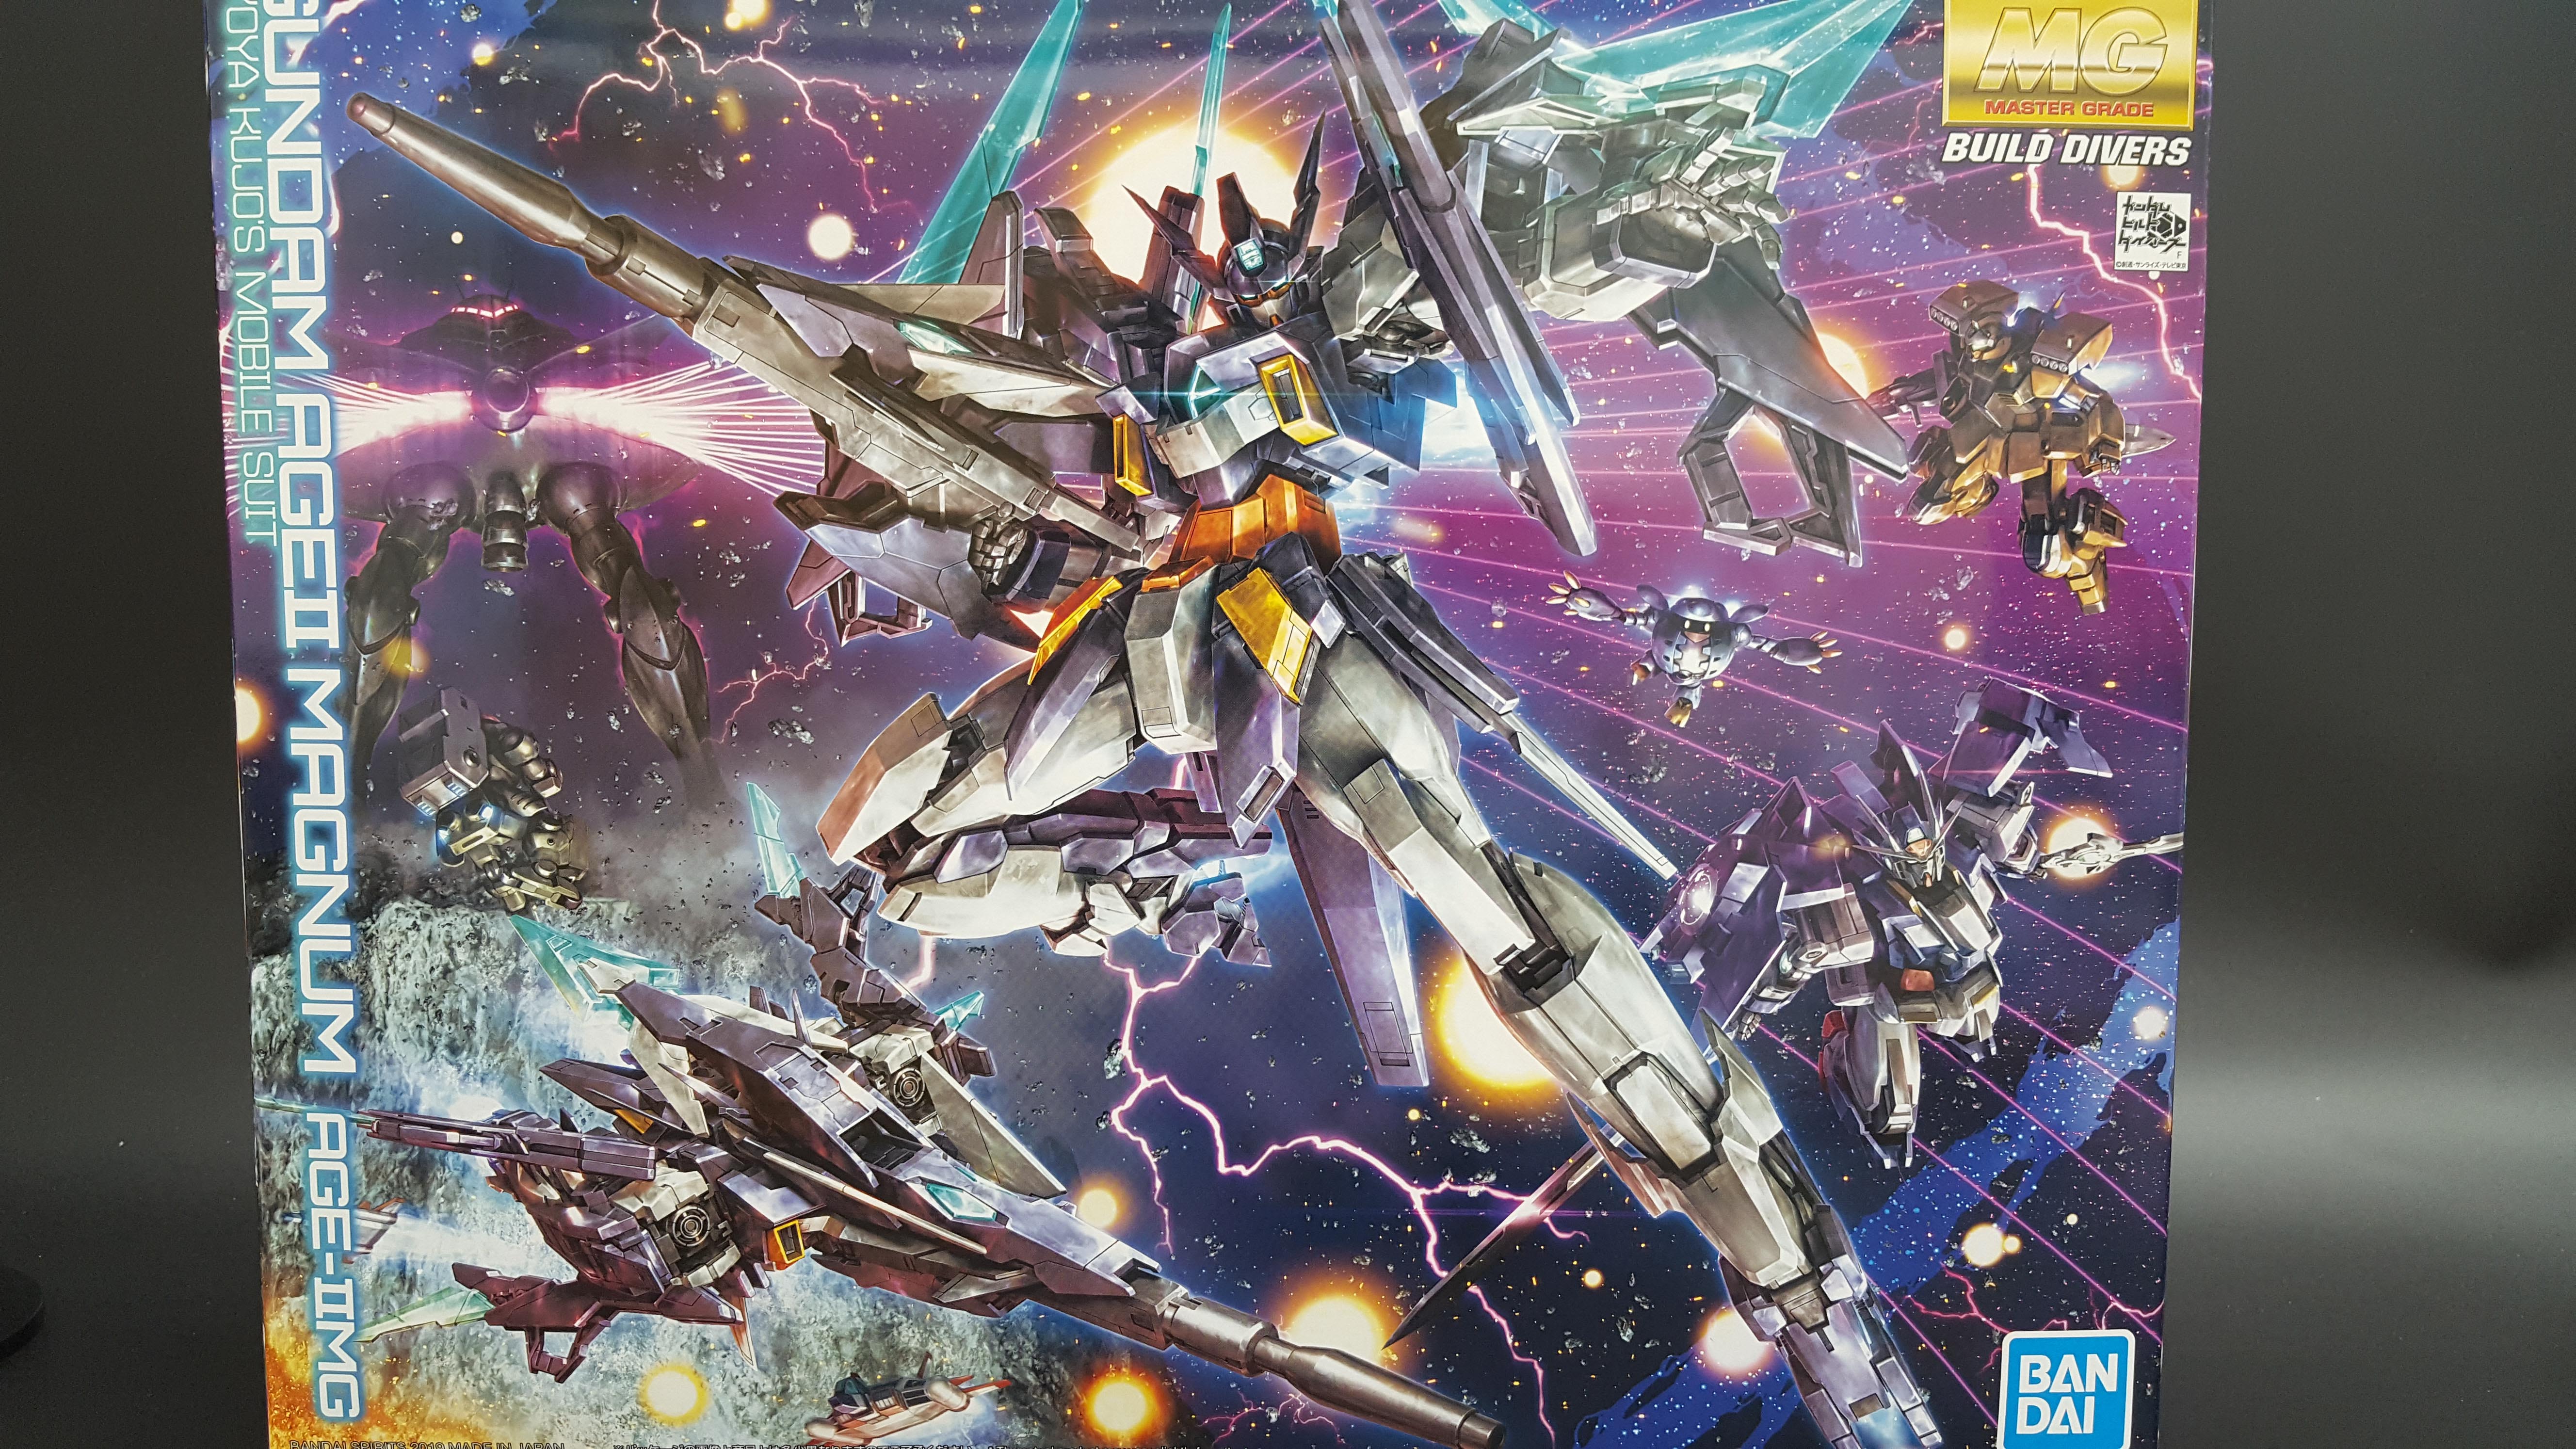 1/100 MG Gundam AGEII Magnum